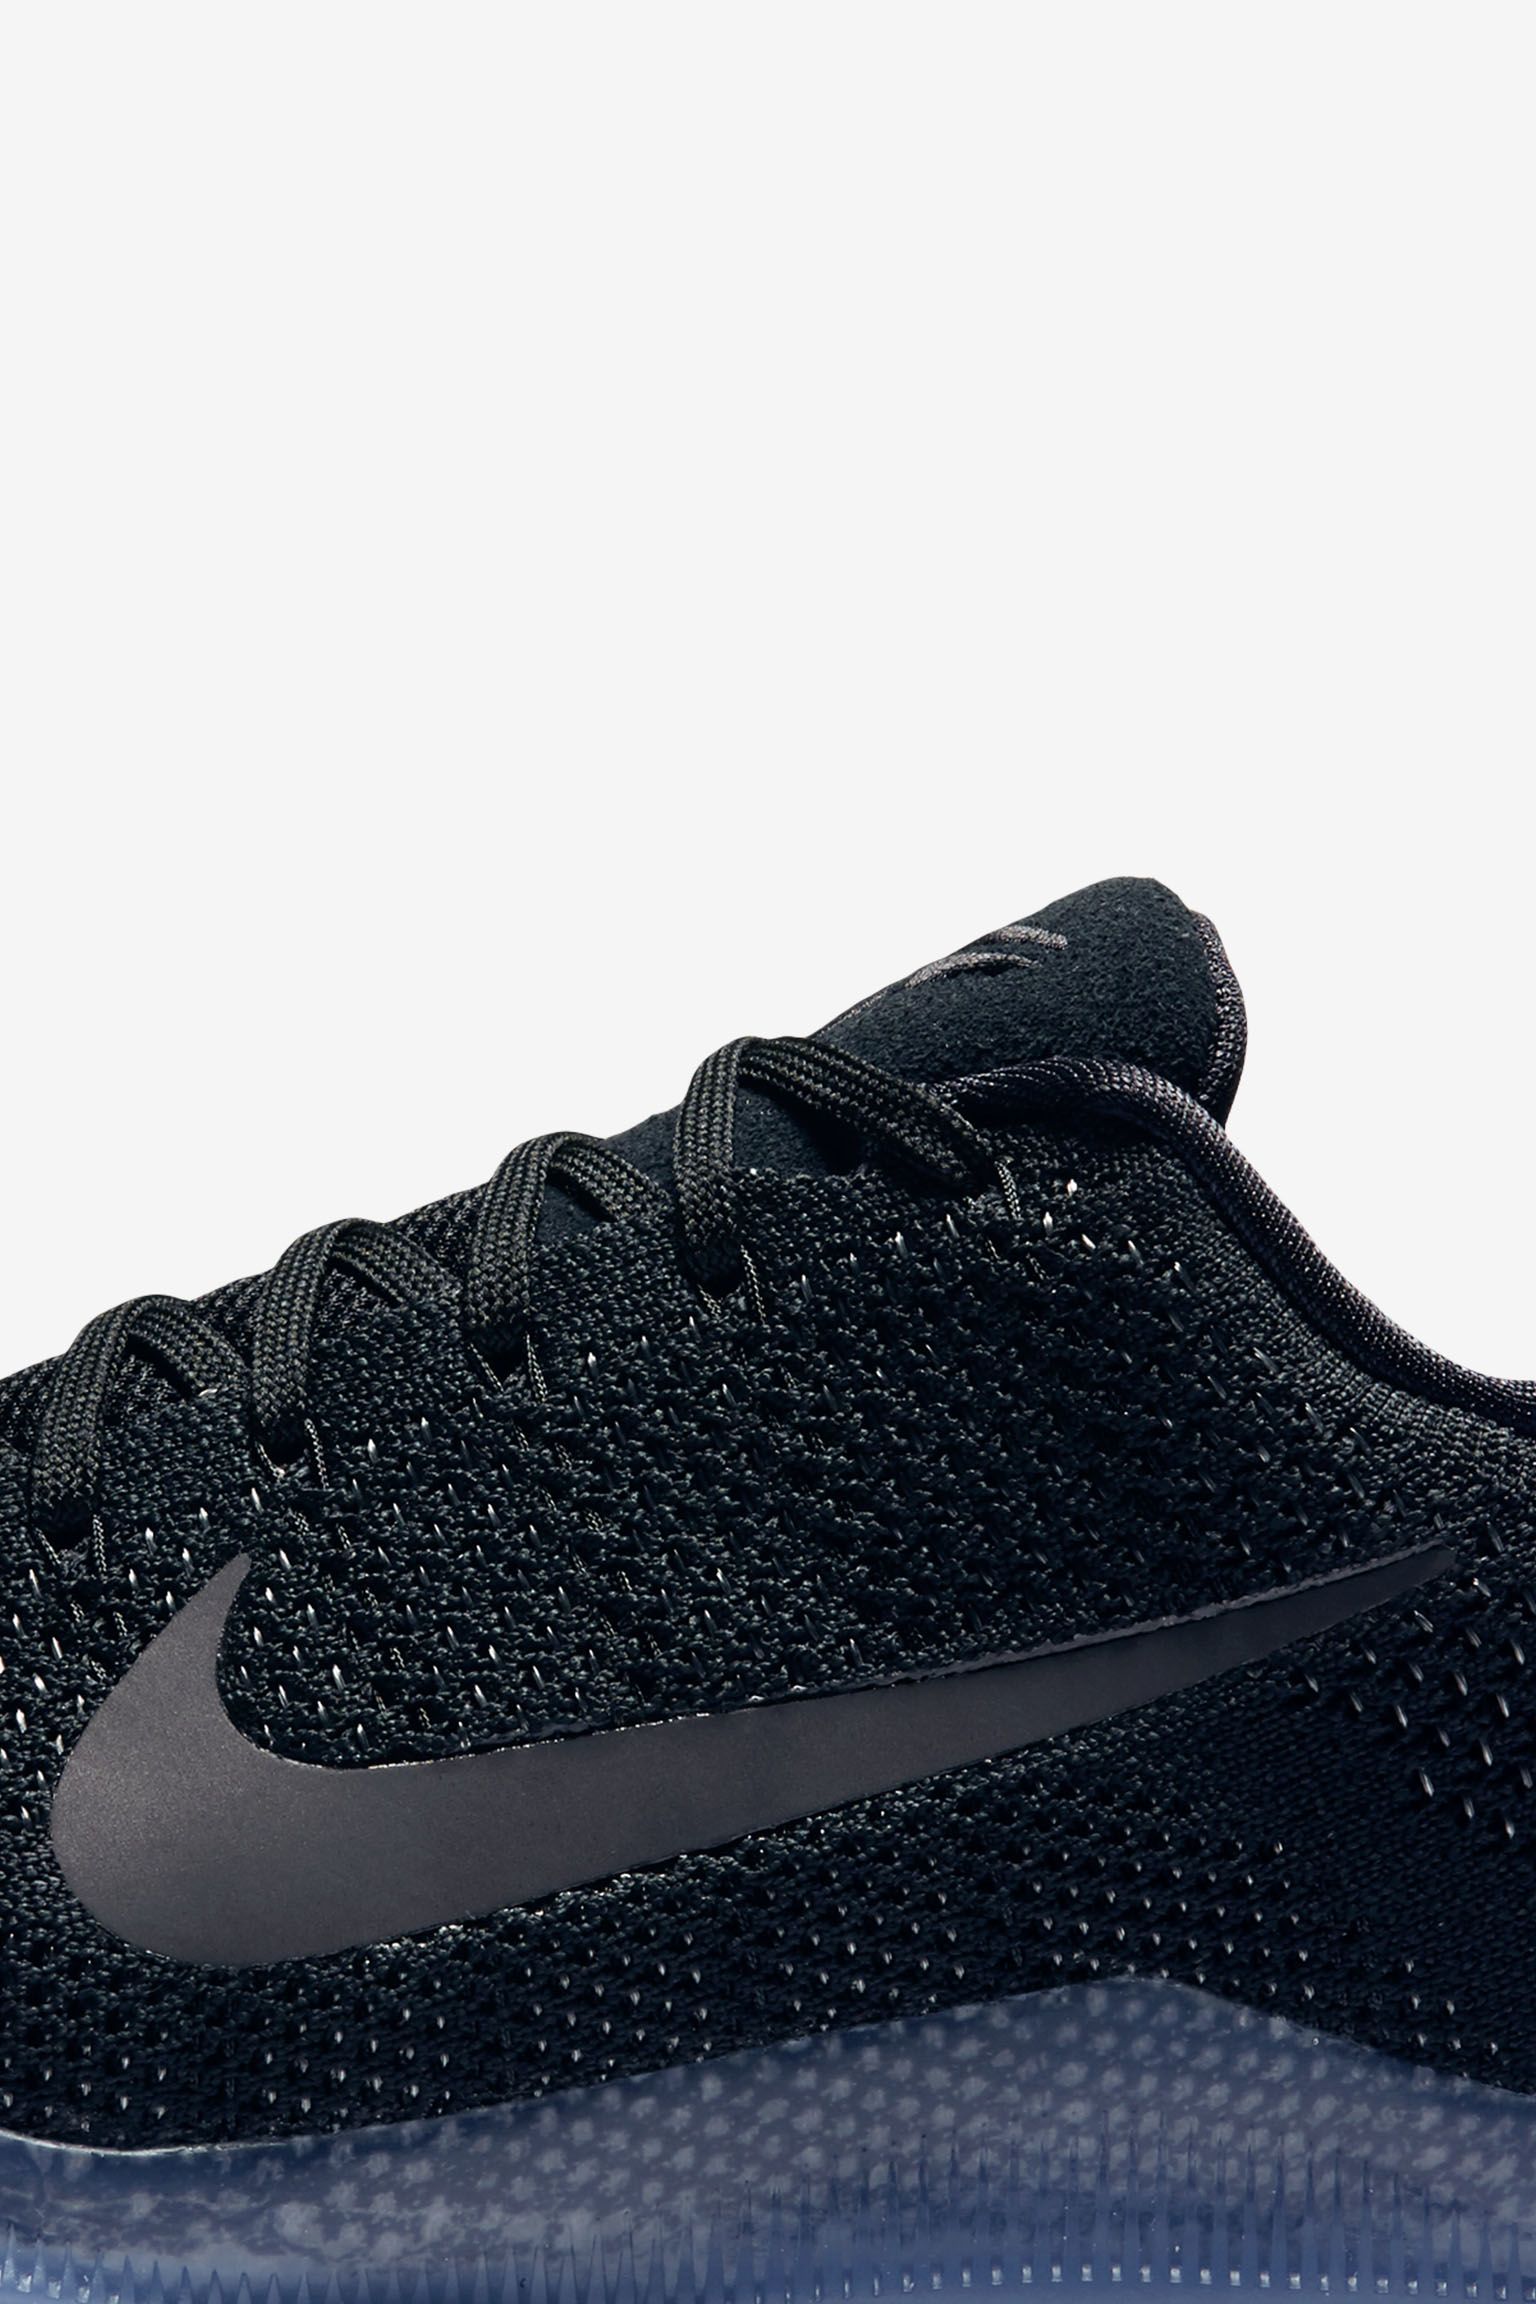 Nike Kobe 11 Elite Low 'Black Space' Release Date. Nike⁠+ SNKRS